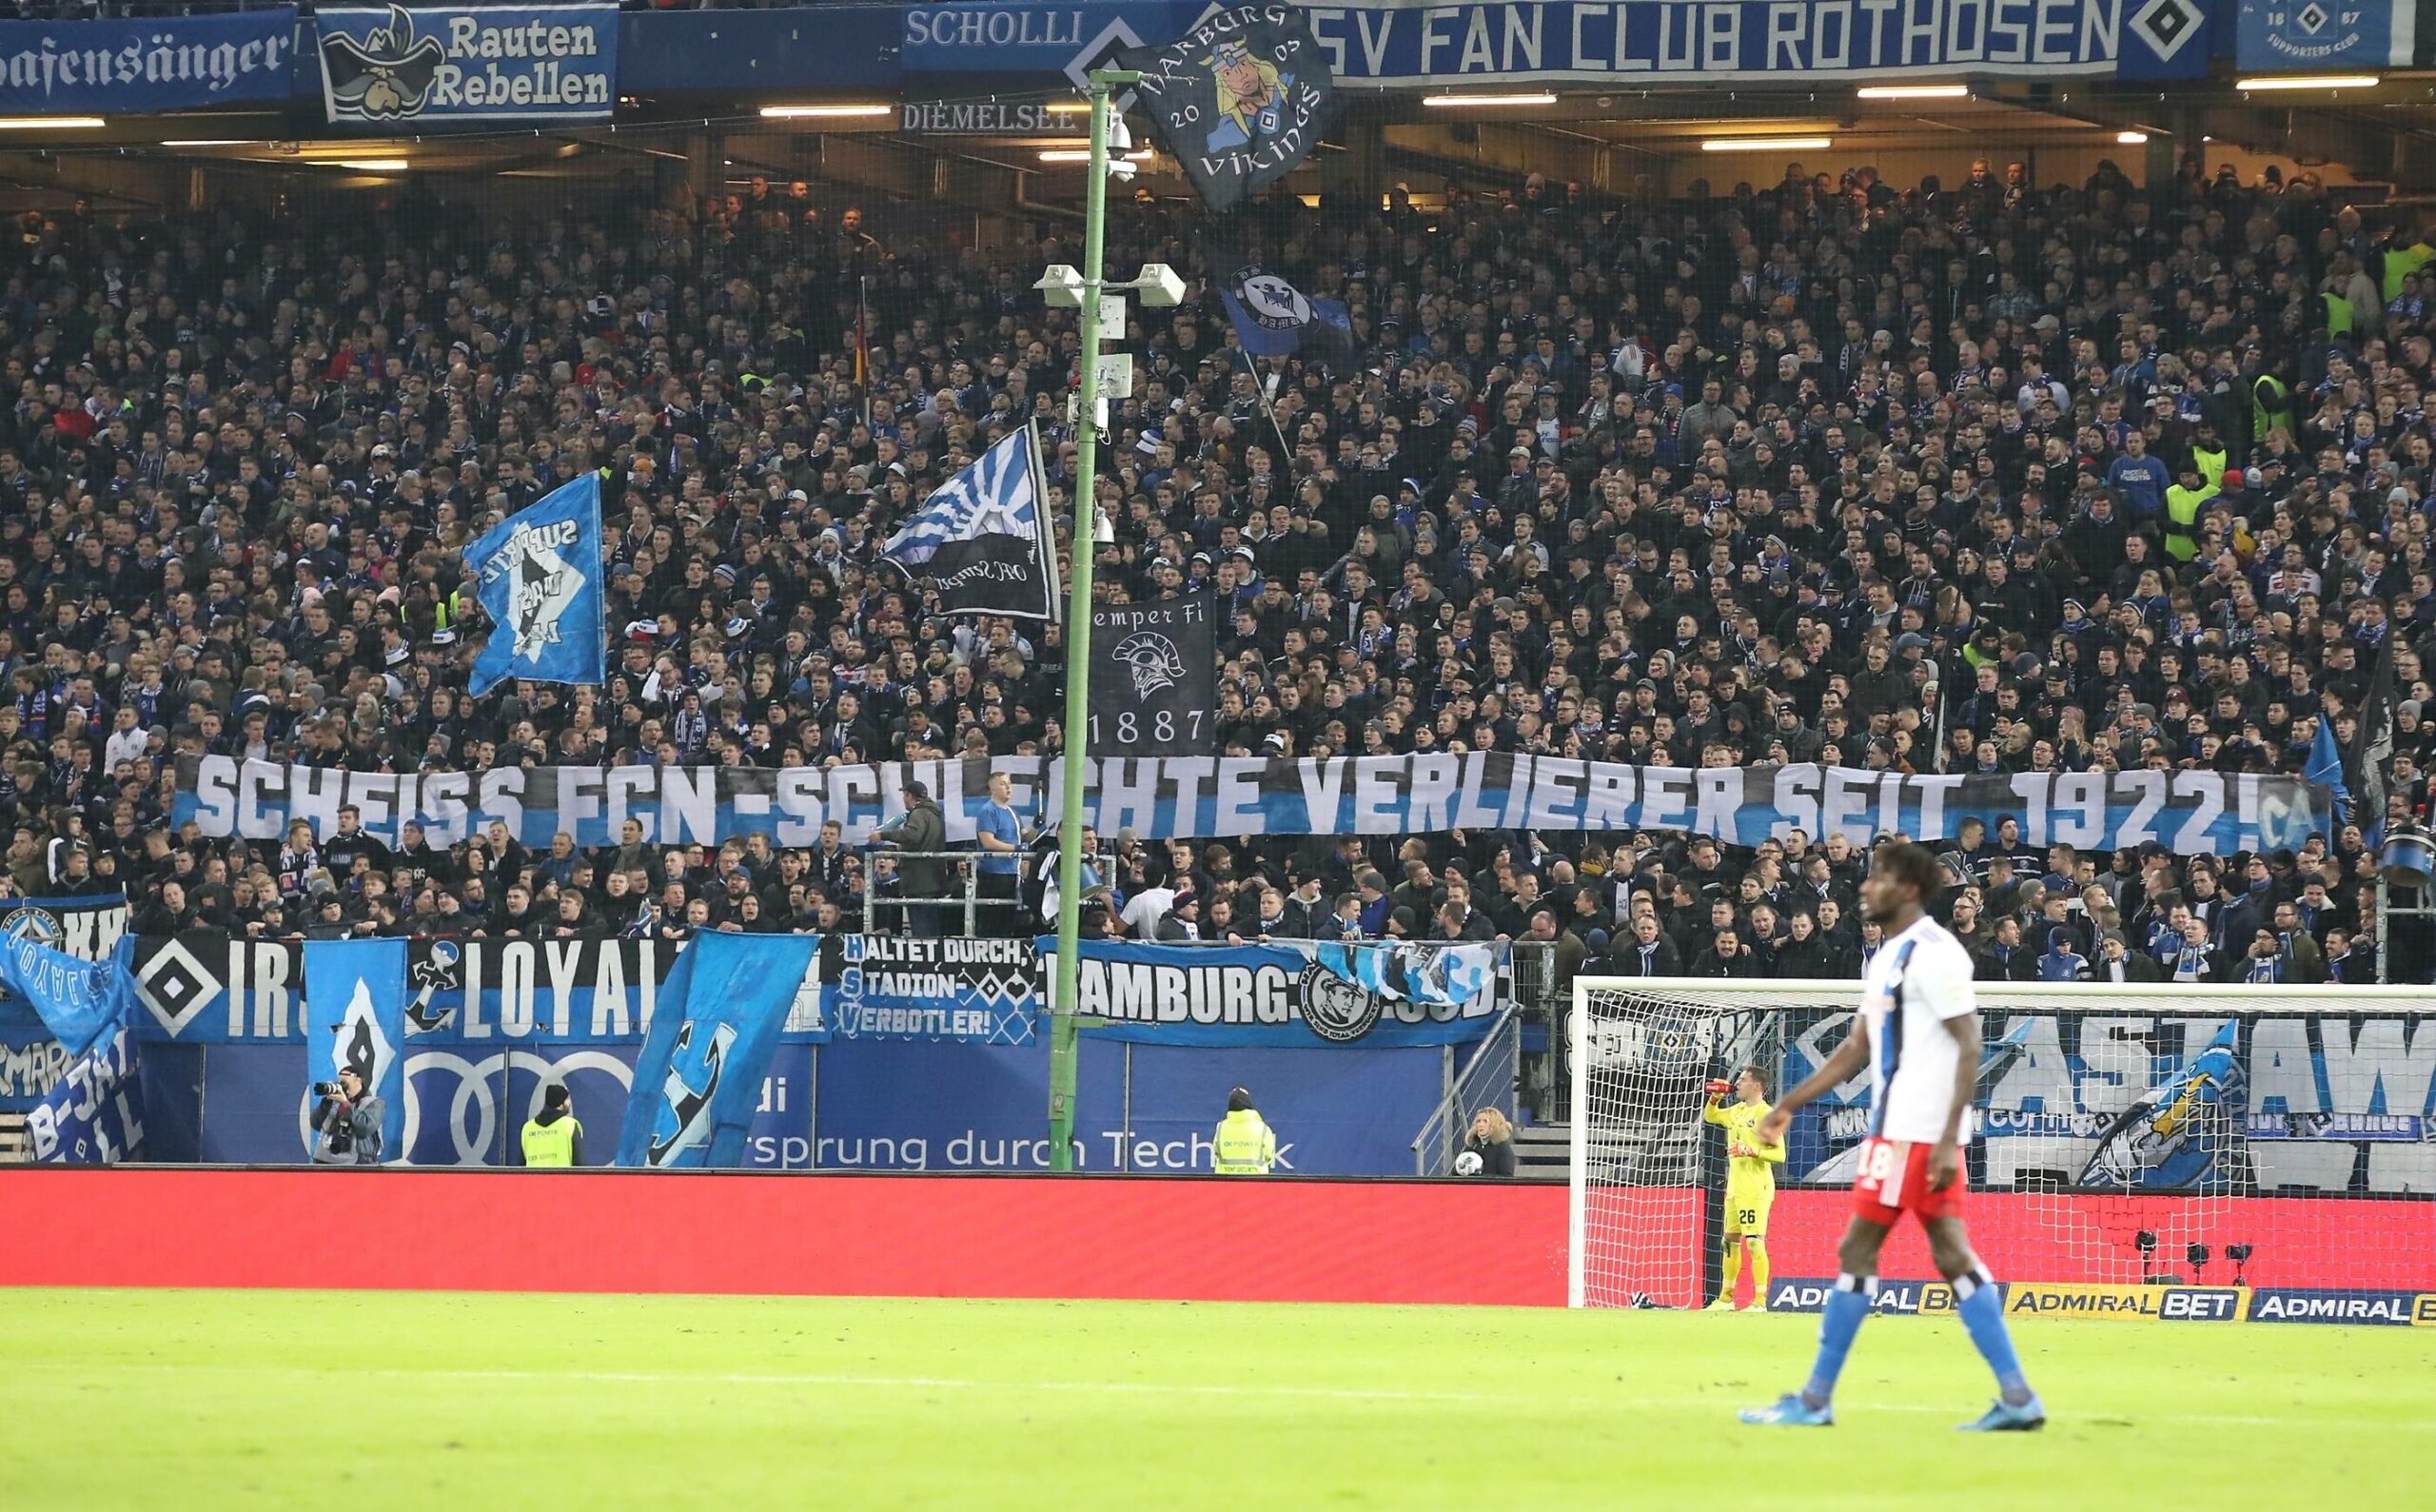 Im Januar 2020 begrüßten HSV-Fans die Nürnberger als „schlechte Verlierer seit 1922“.